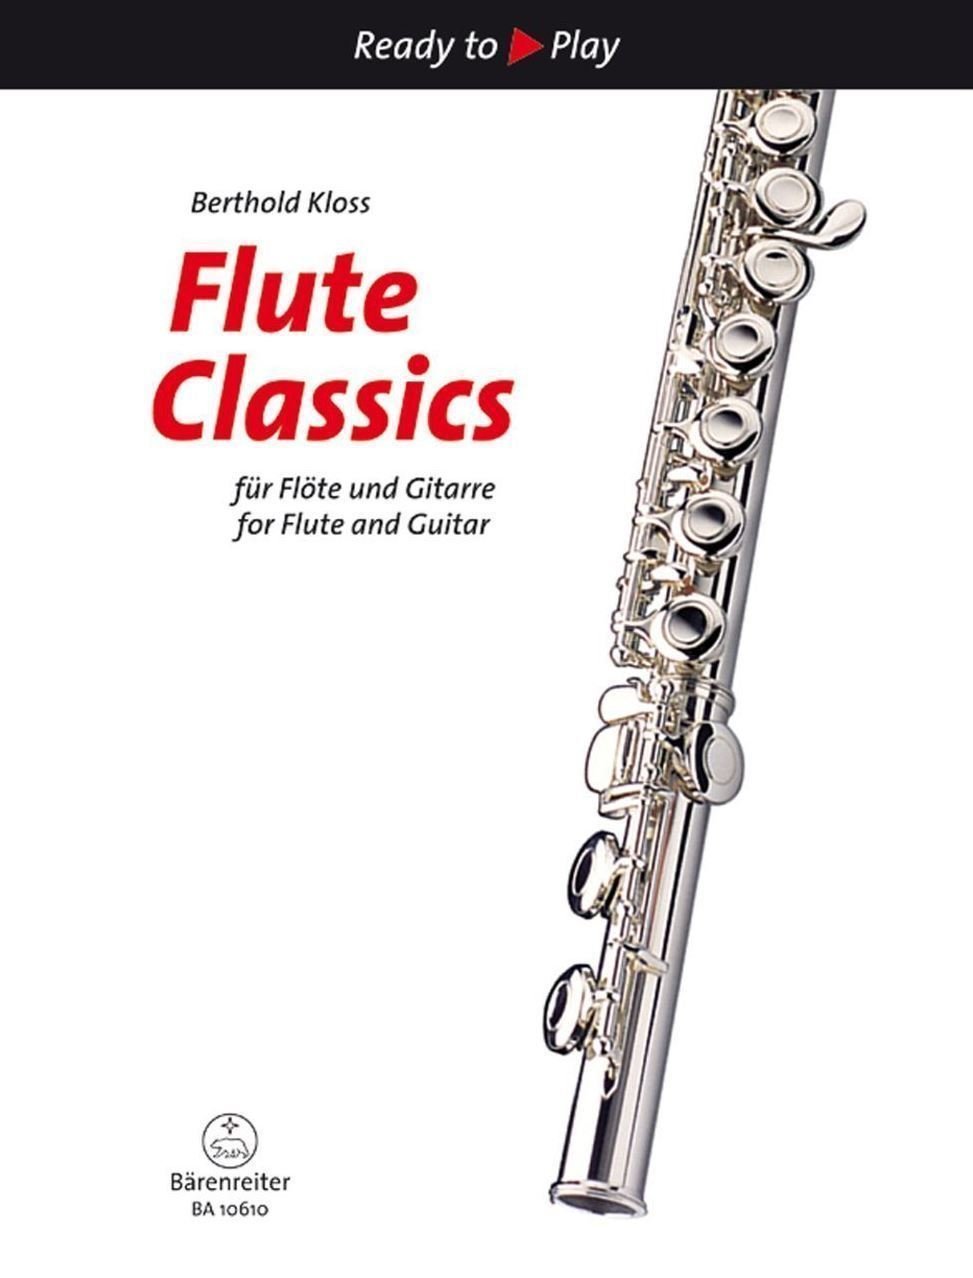 Παρτιτούρα για Πνευστά Όργανα Bärenreiter Flute Classic for Flute and Guitar Μουσικές νότες